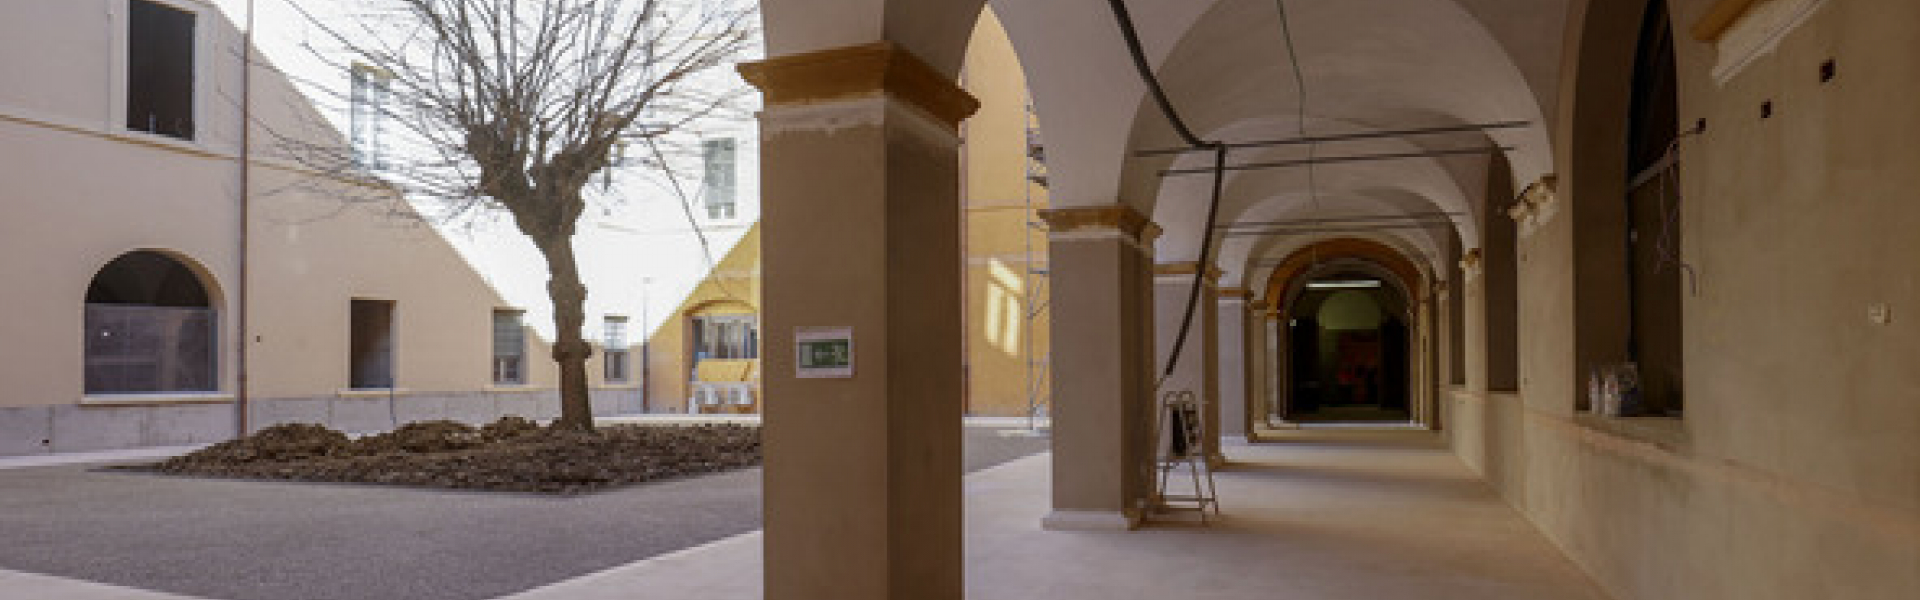 Nuova ala Palazzo del Musei